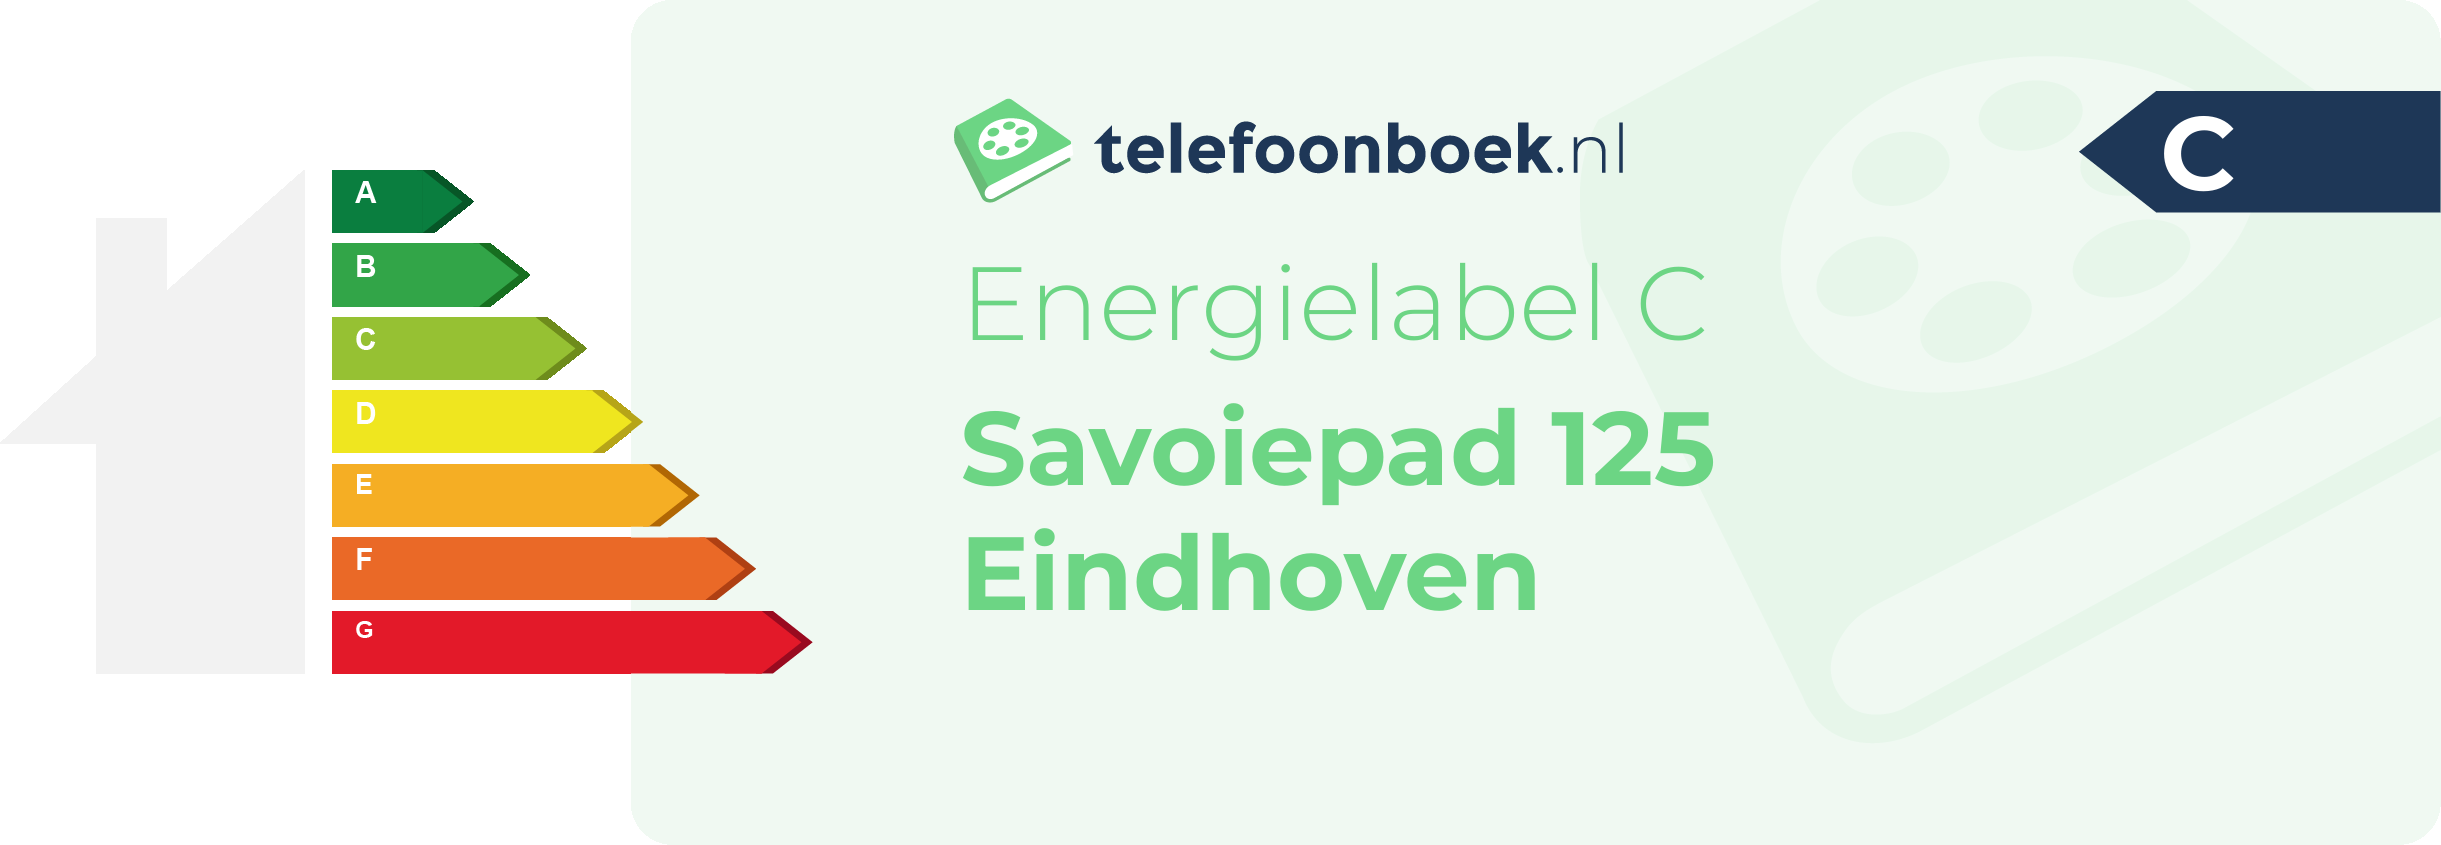 Energielabel Savoiepad 125 Eindhoven